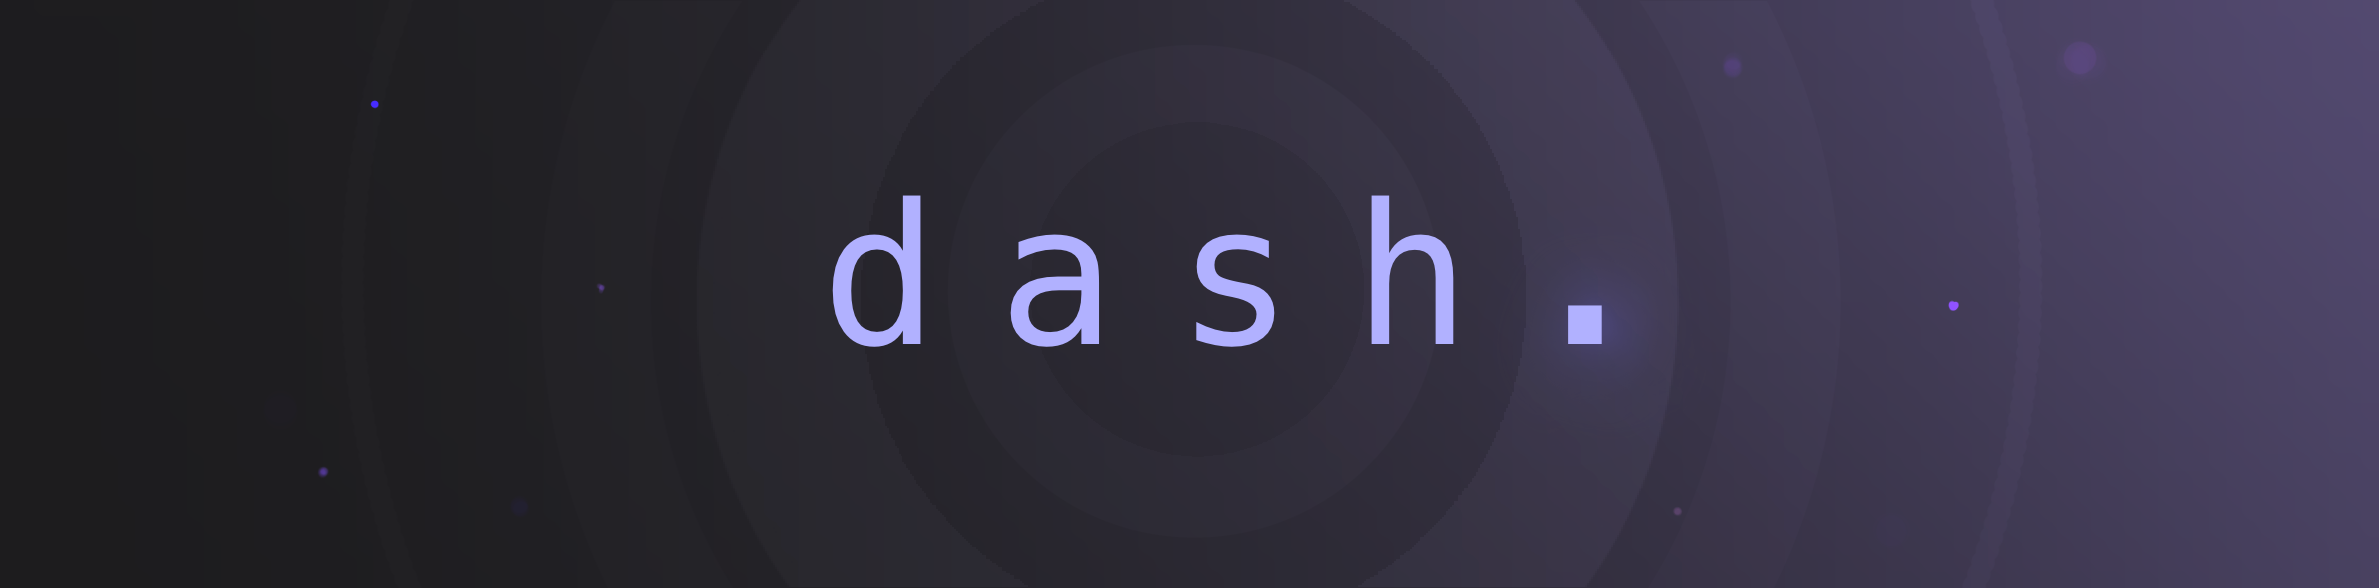 dash-dot-png